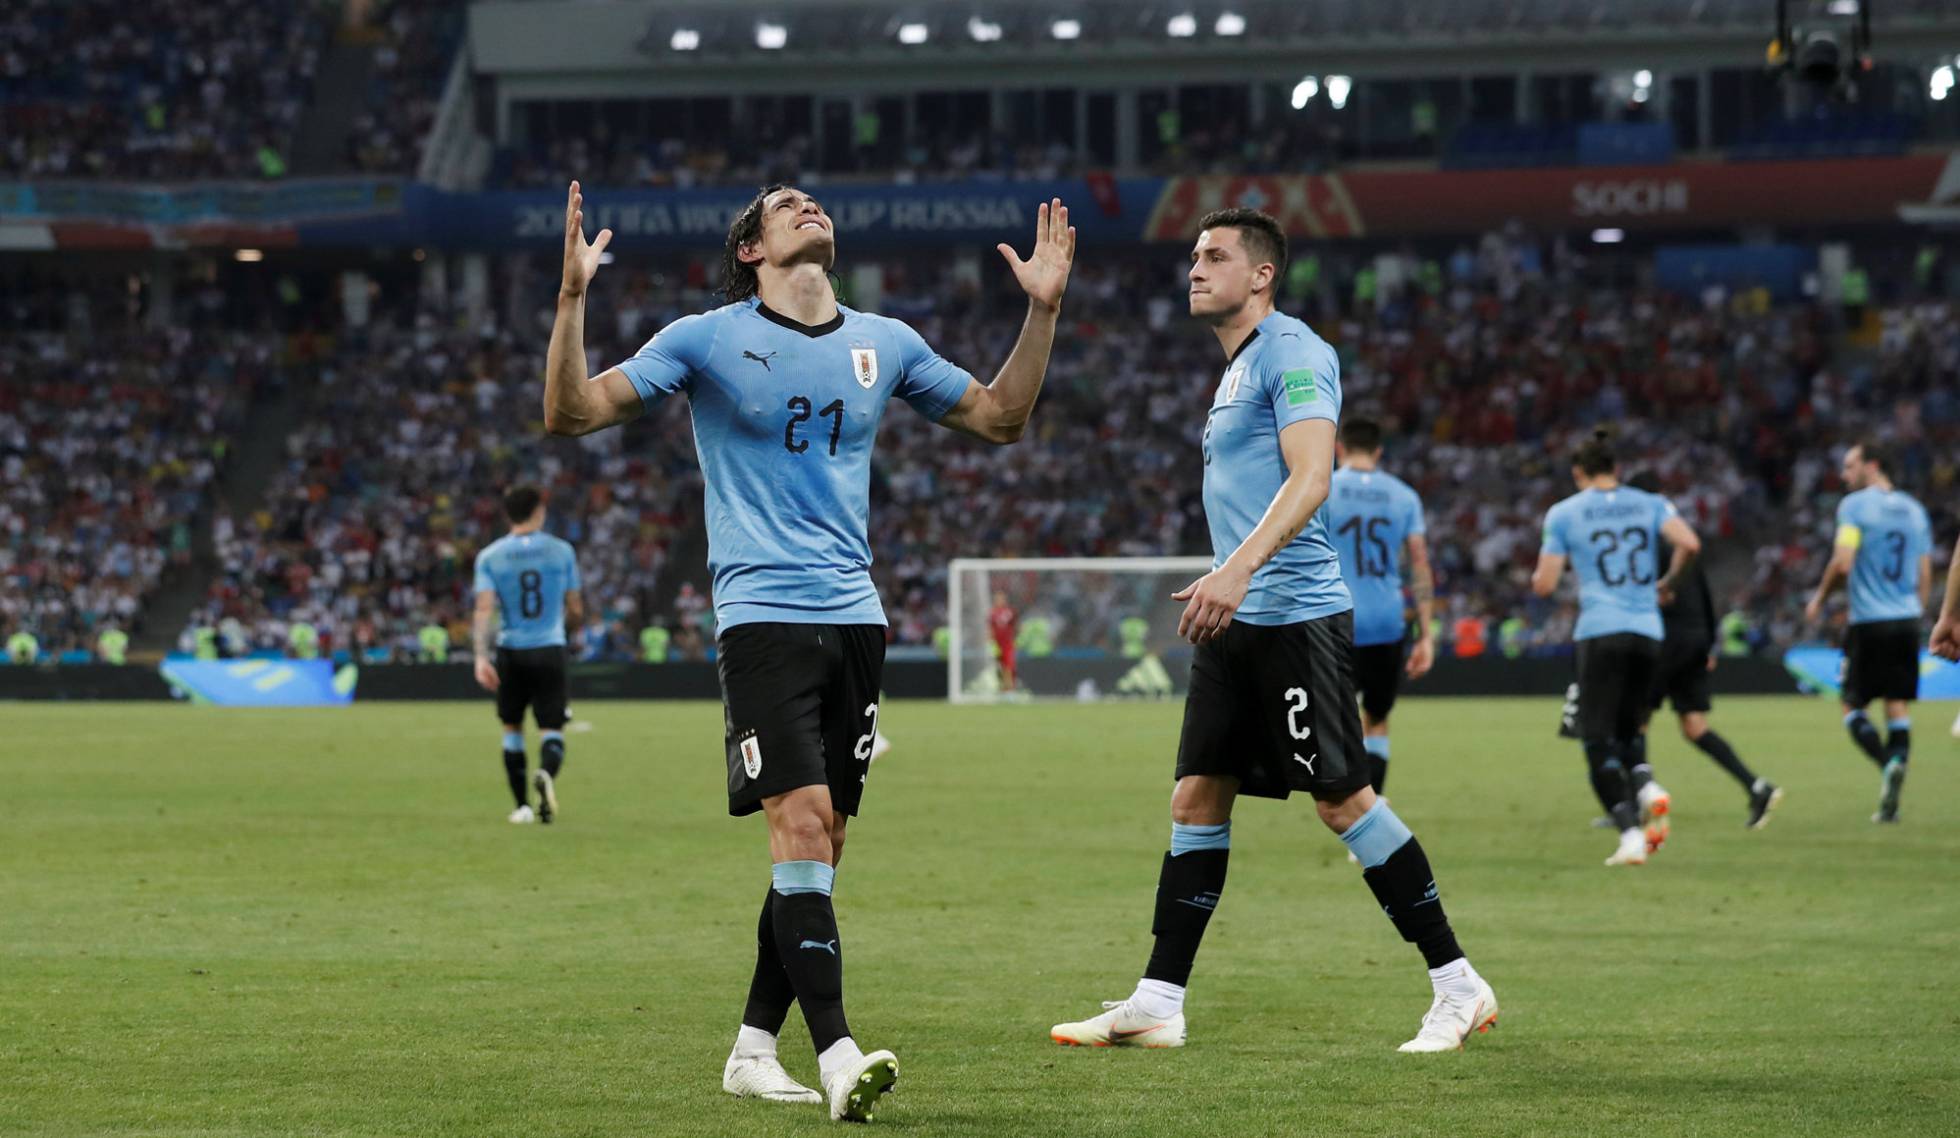 Dois golos de Cavani contra apenas um de Pepe puseram Portugal fora do Mundial nos oitavos de final. A competição perde Ronaldo e Messi